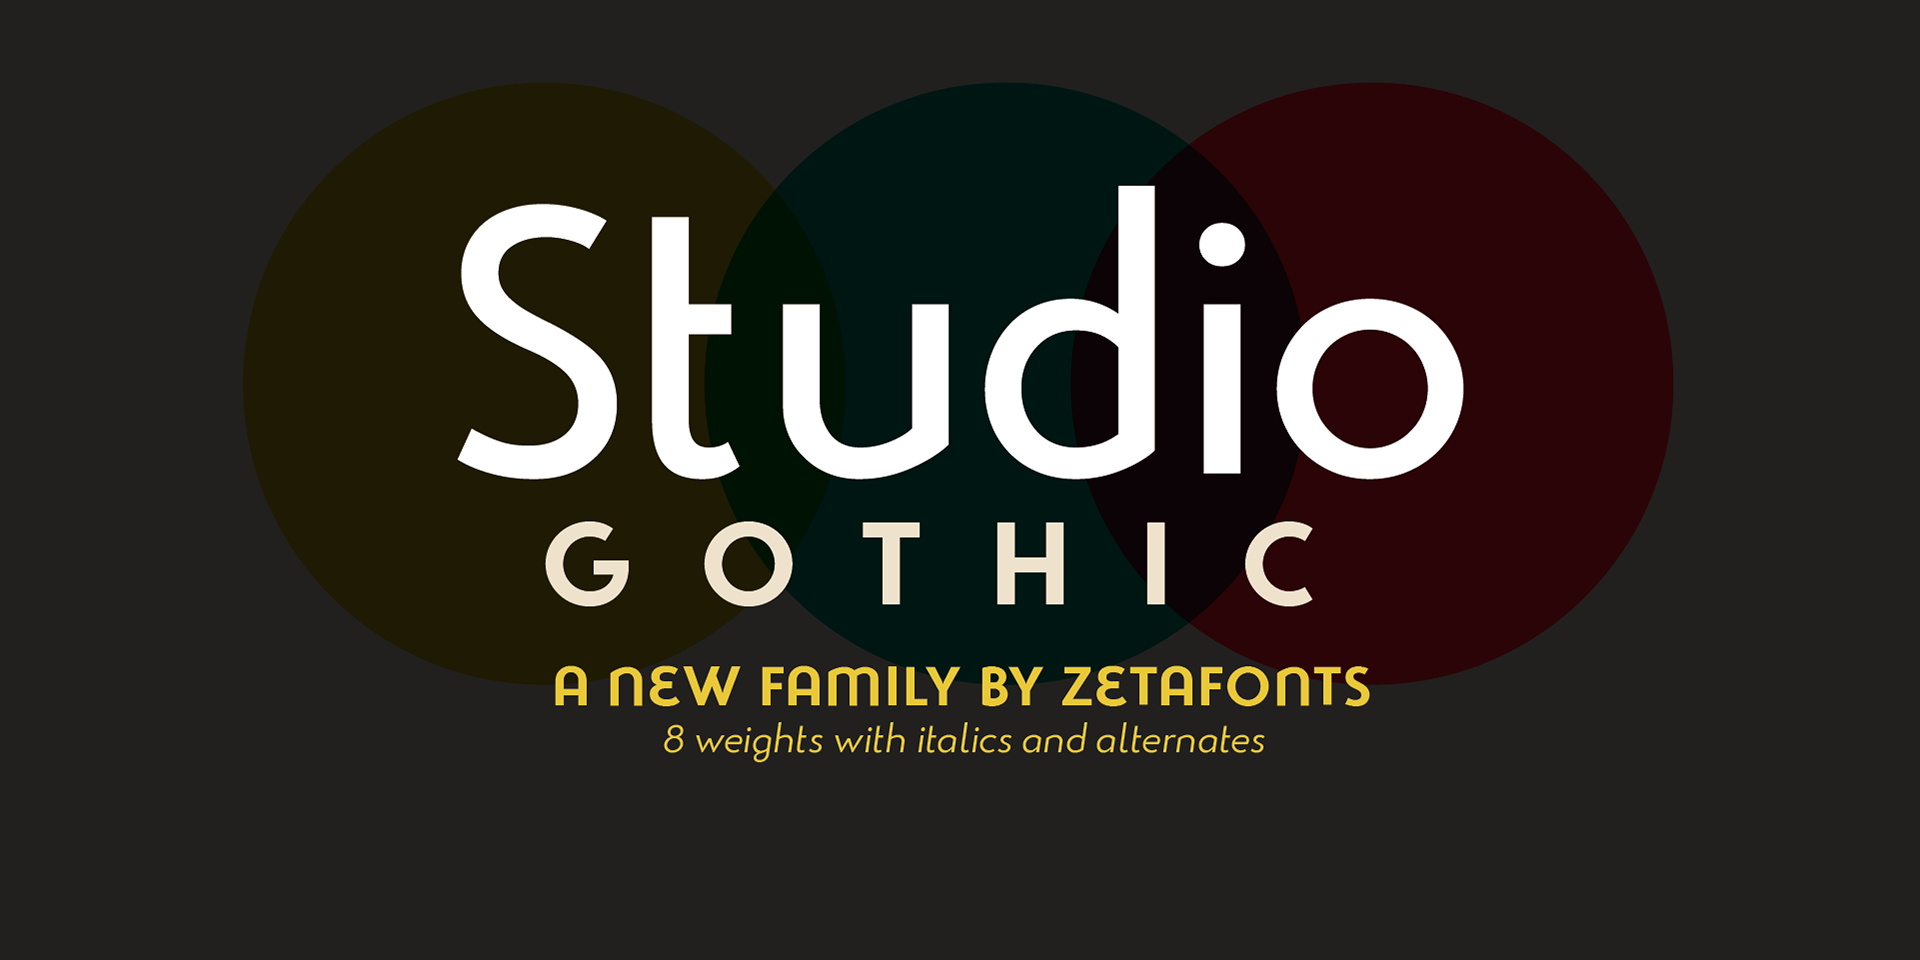 Beispiel einer Studio Gothic-Schriftart